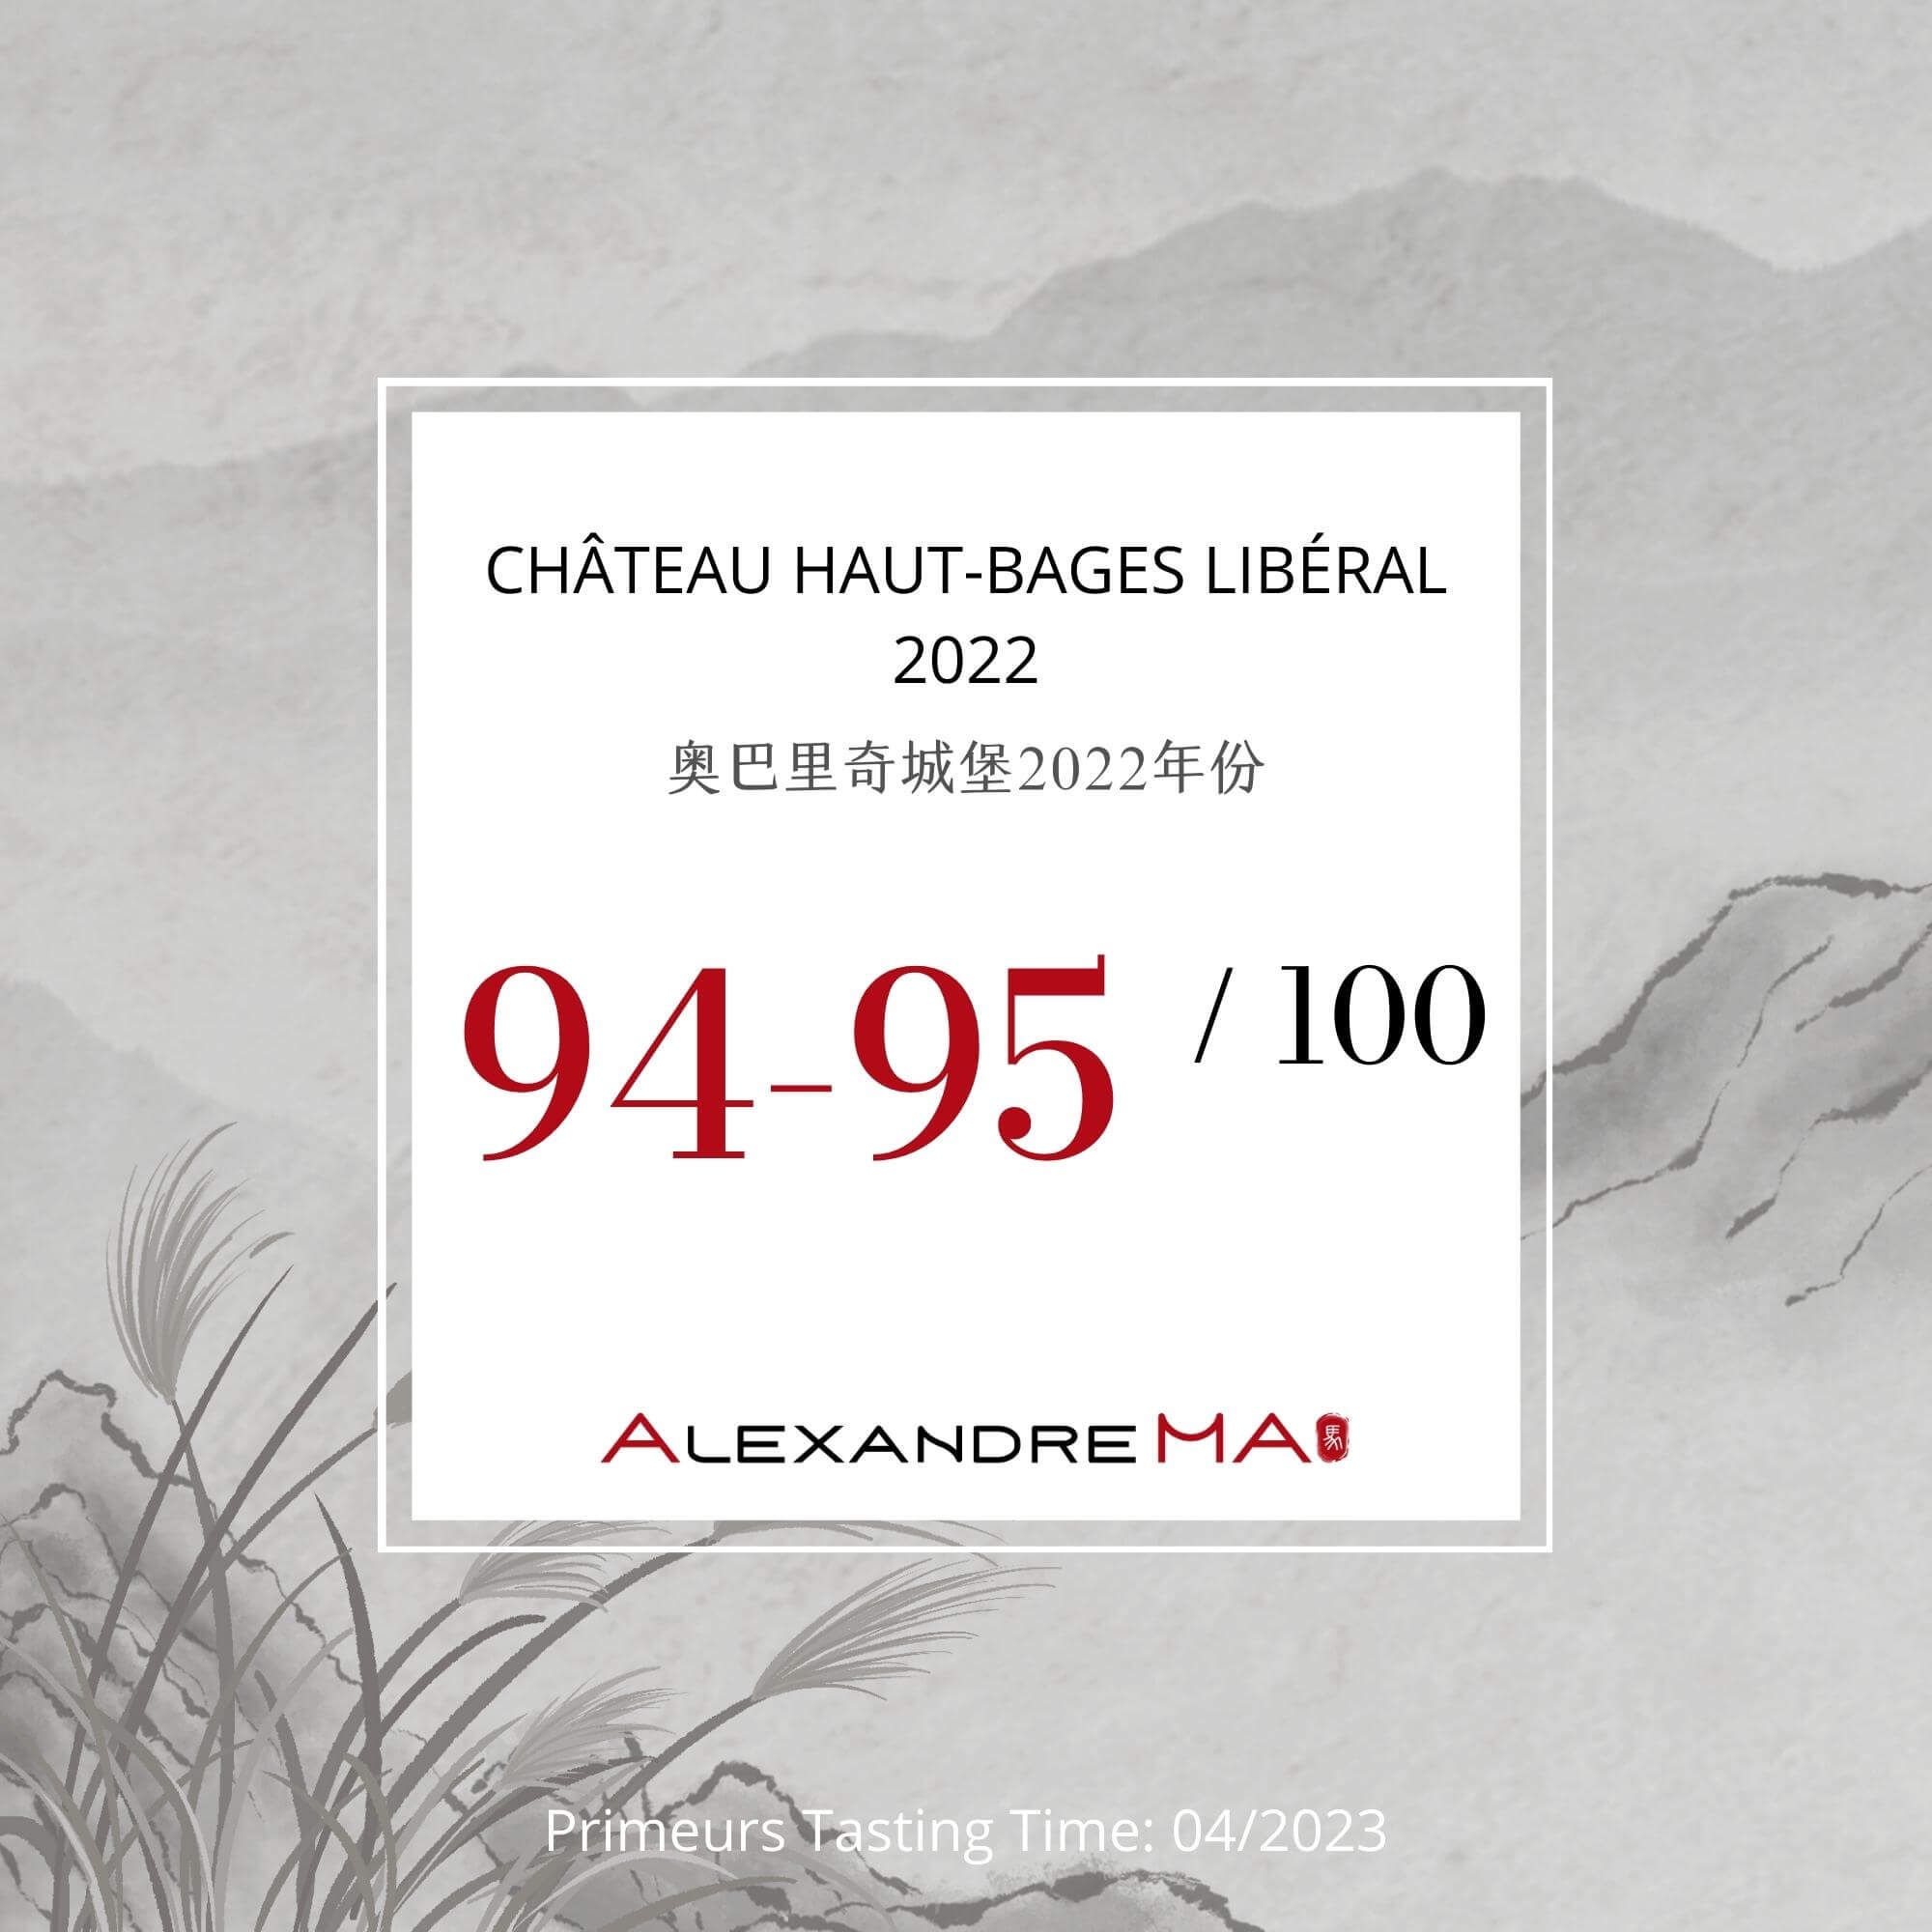 Château Haut-Bages Libéral 2022 Primeurs - Alexandre MA